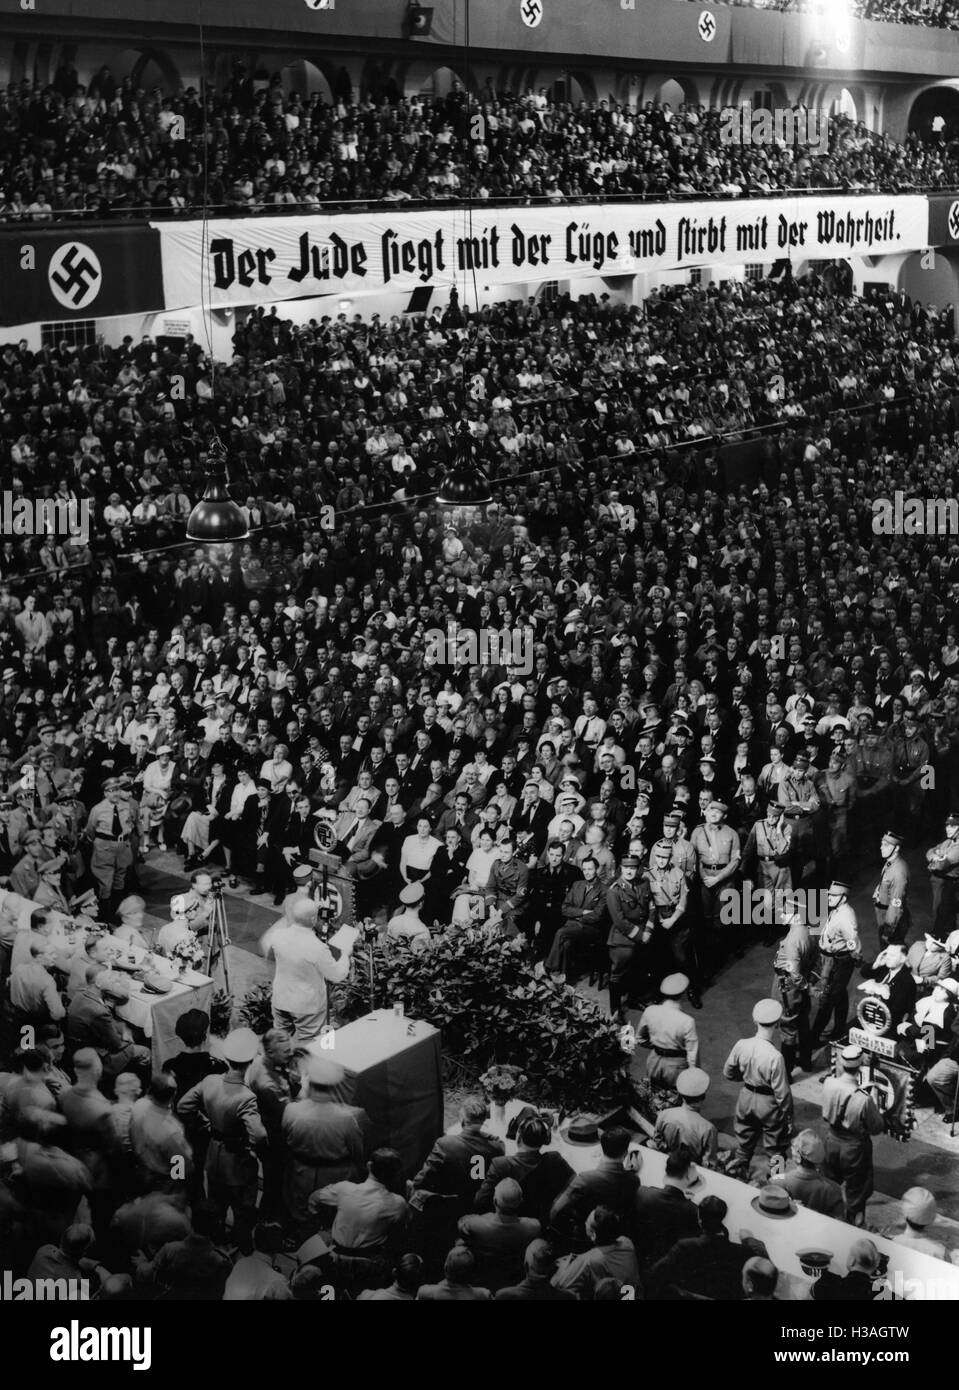 Gauleiter Julius Streicher during a speech, 1935 Stock Photo